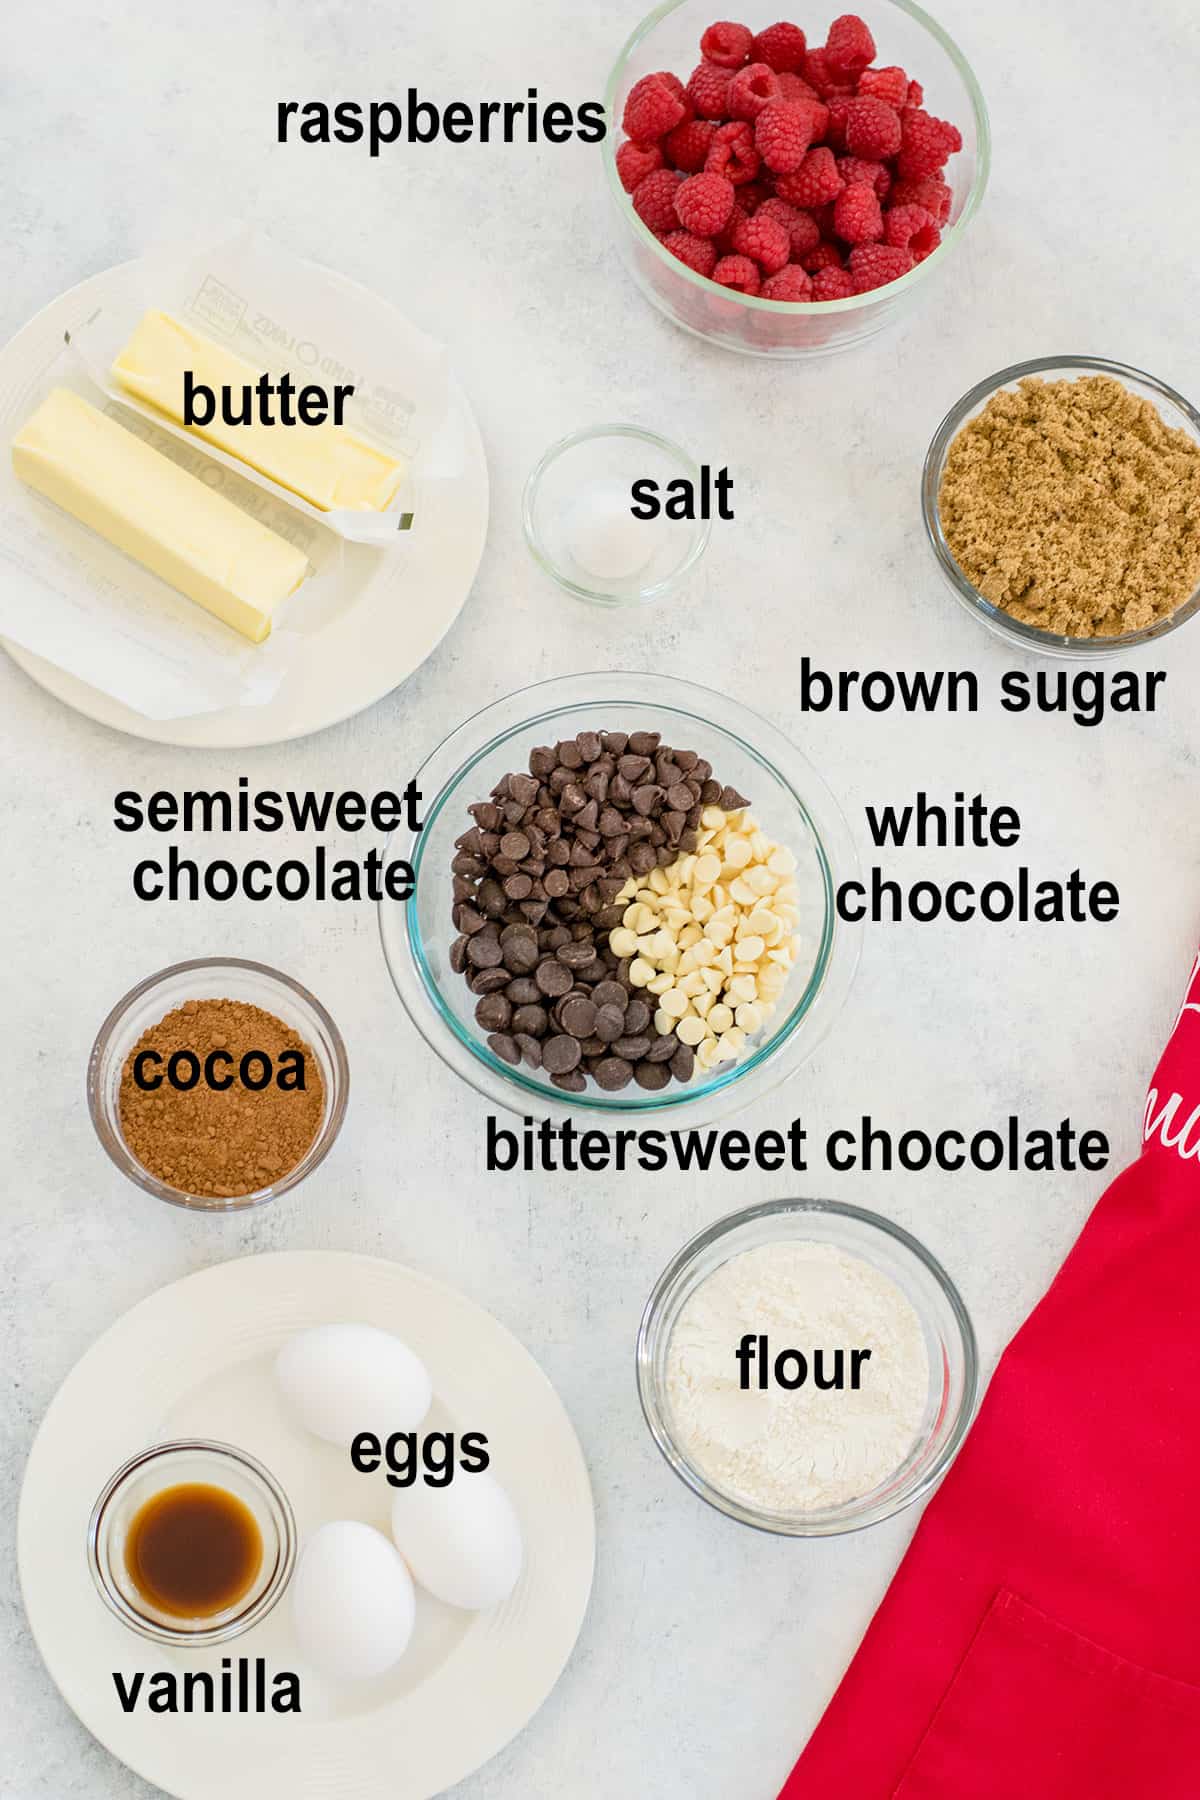 ingredients for triple chocolate brownies with raspberries